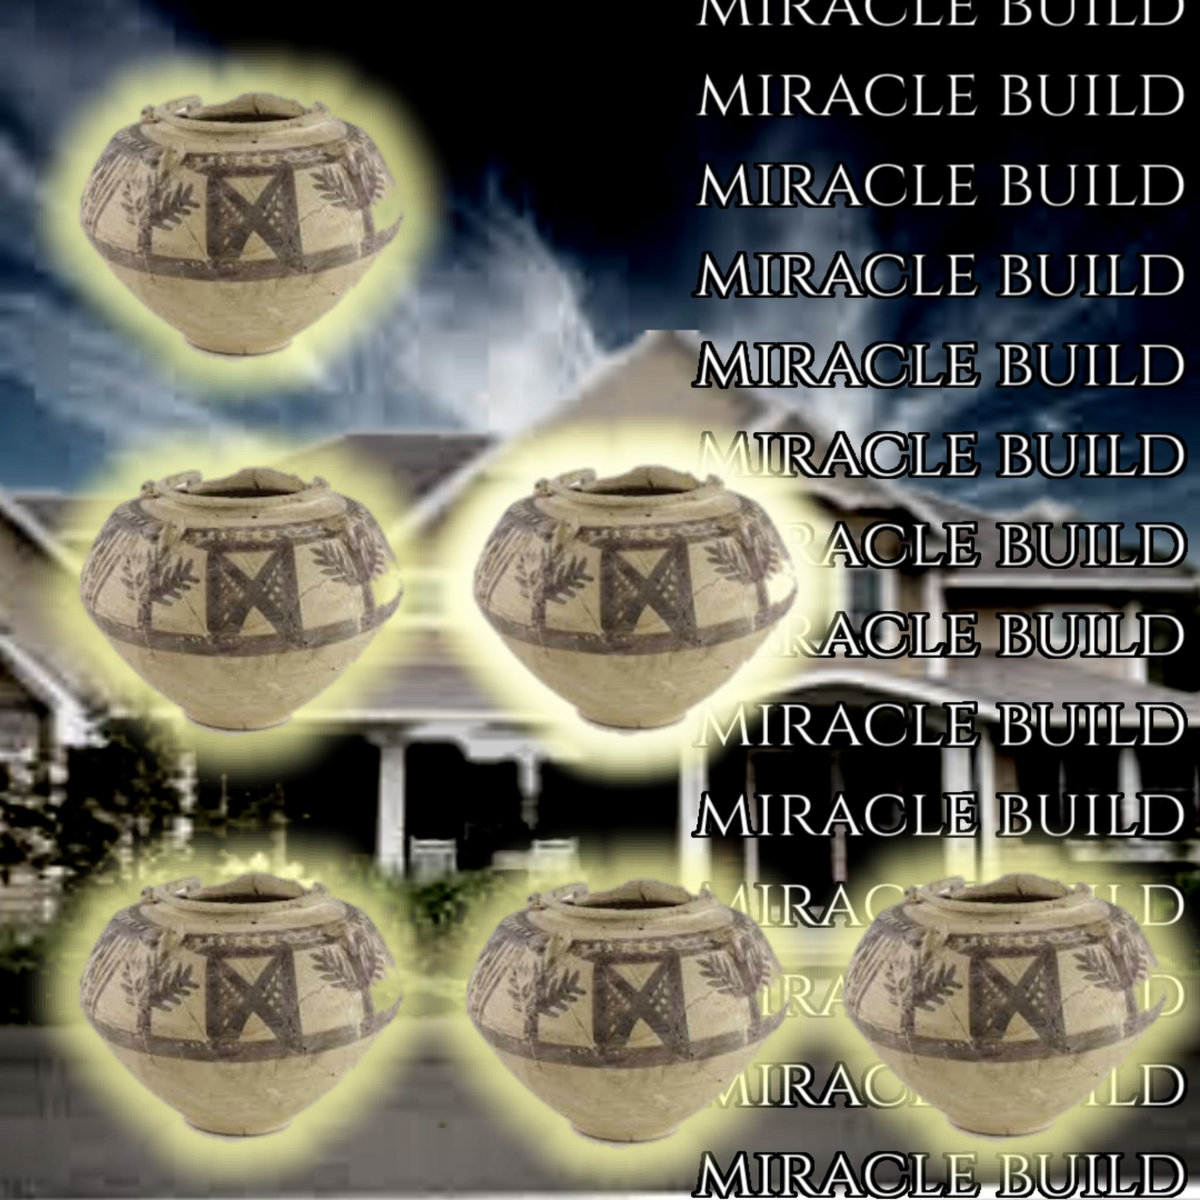 Miracle Build, by waavypanda